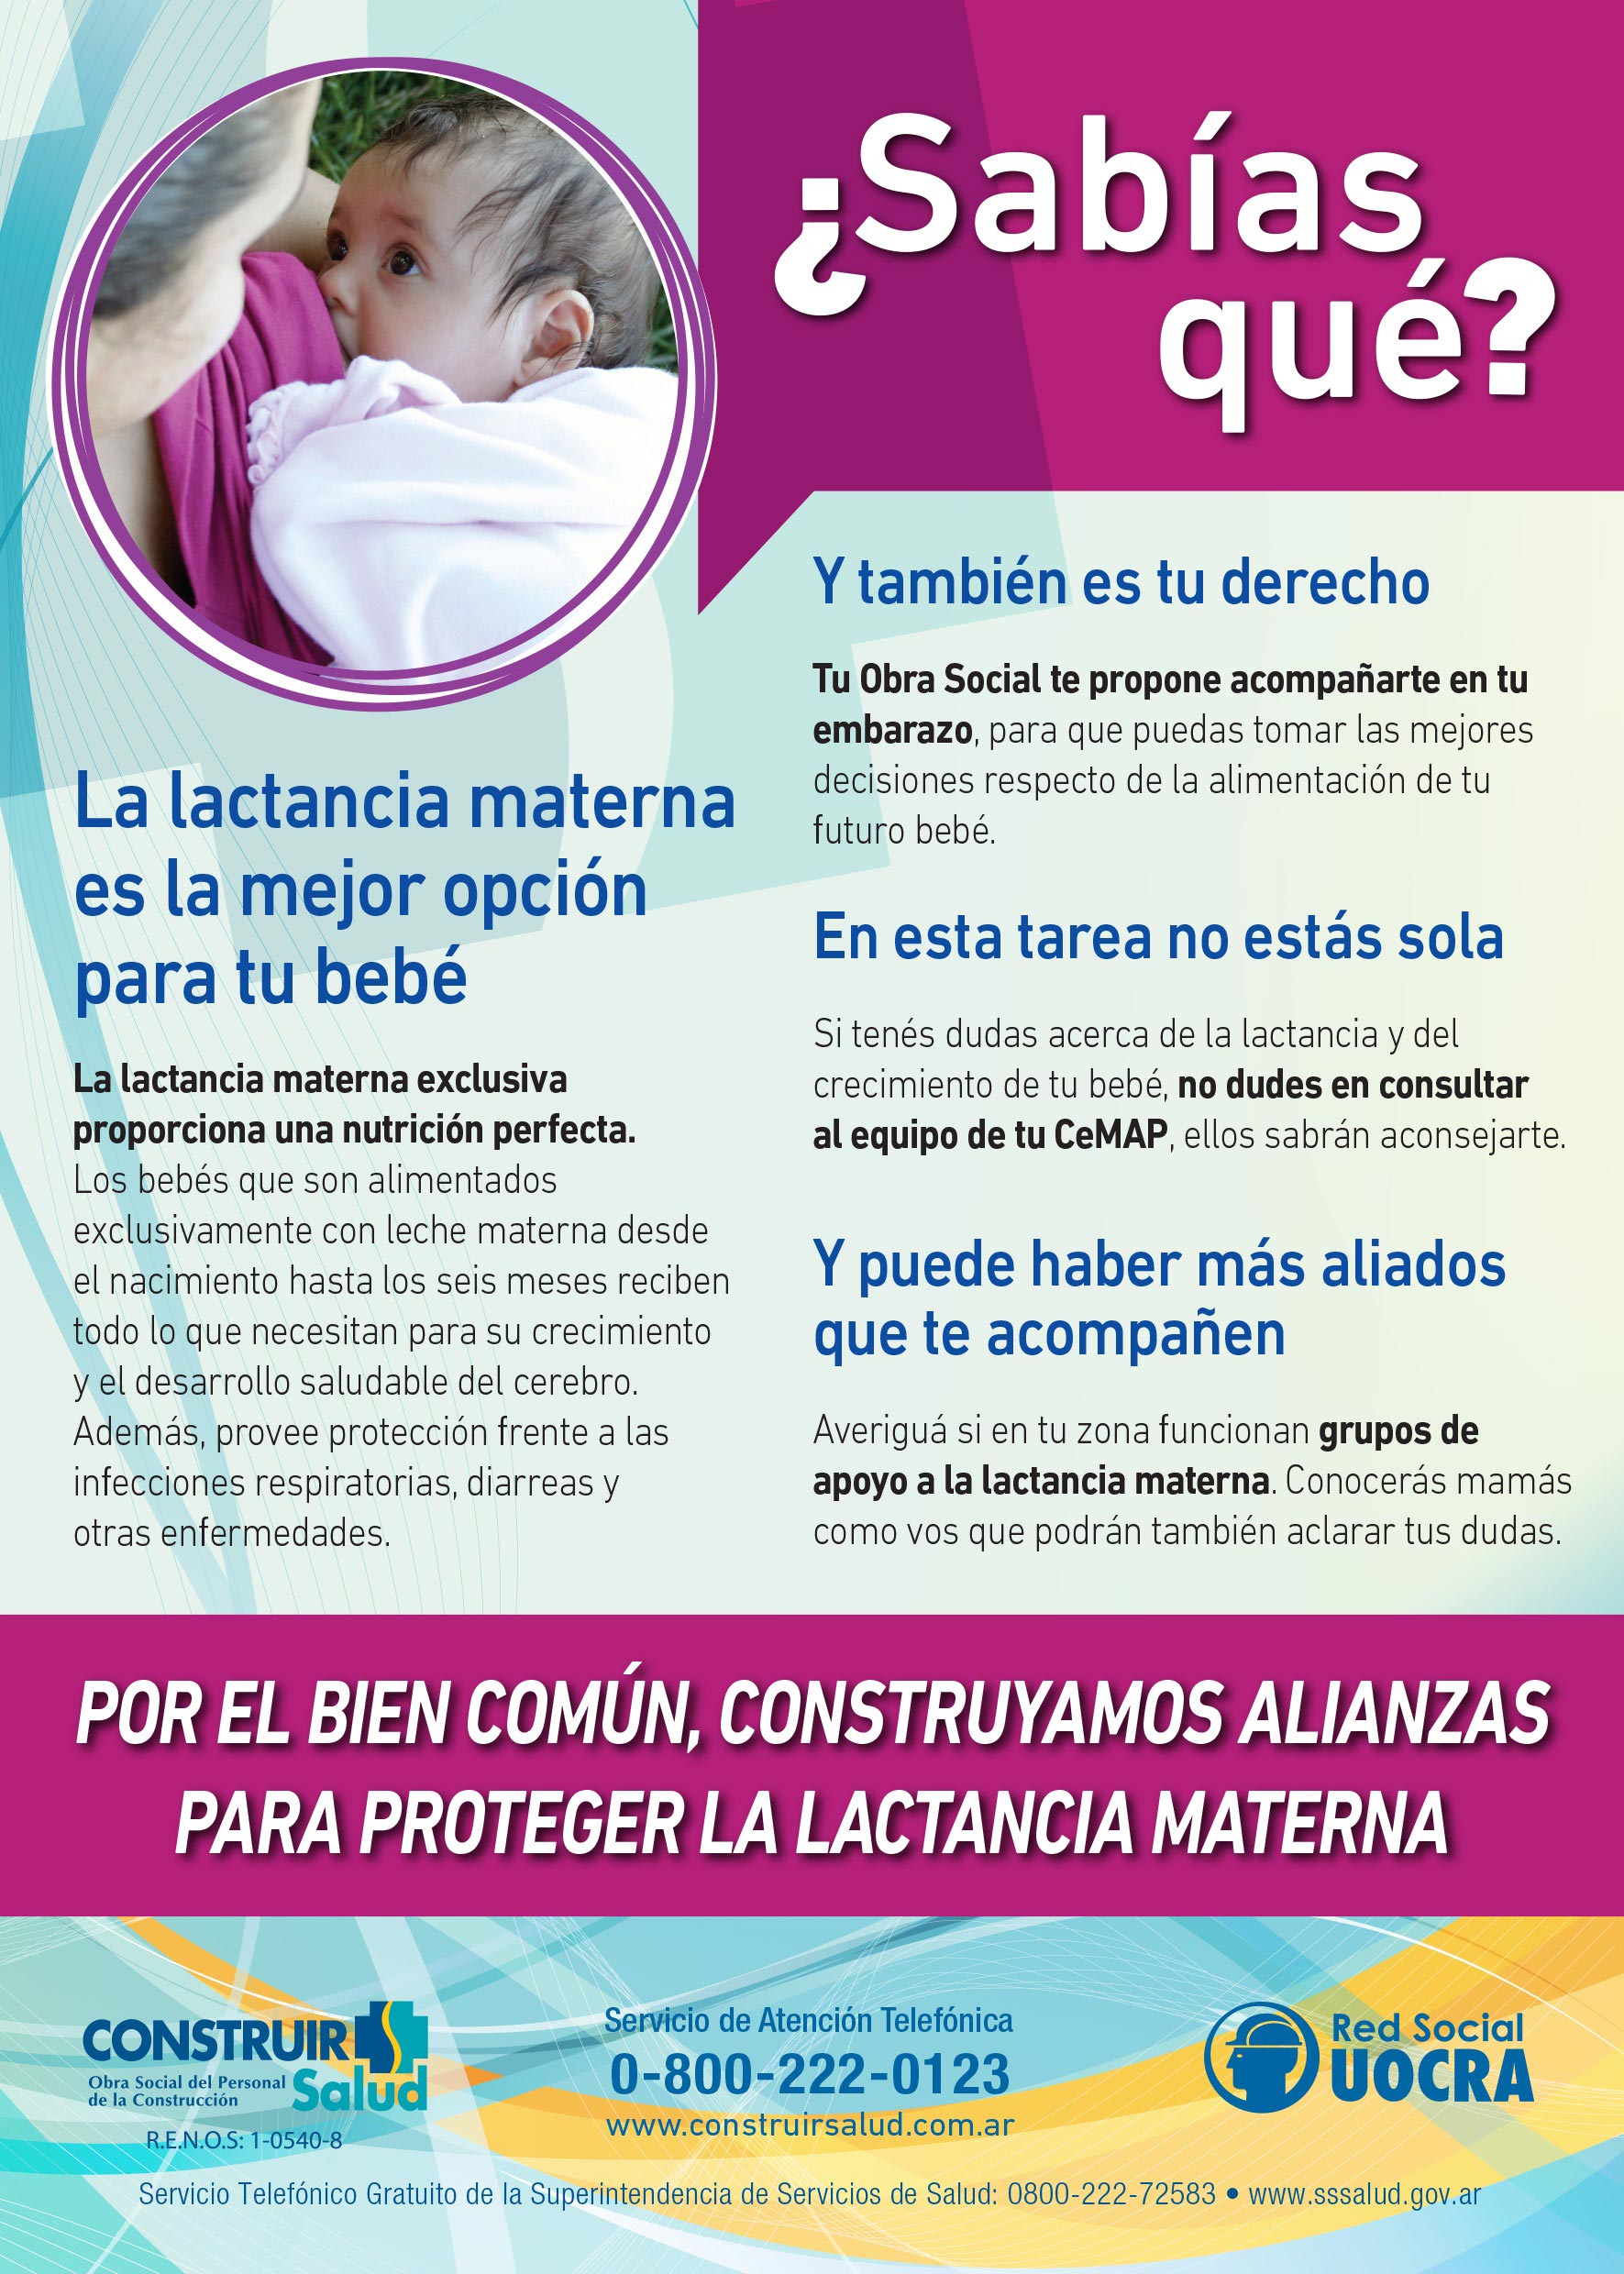 Semana mundial de la lactancia materna del 1 al 7 de agosto